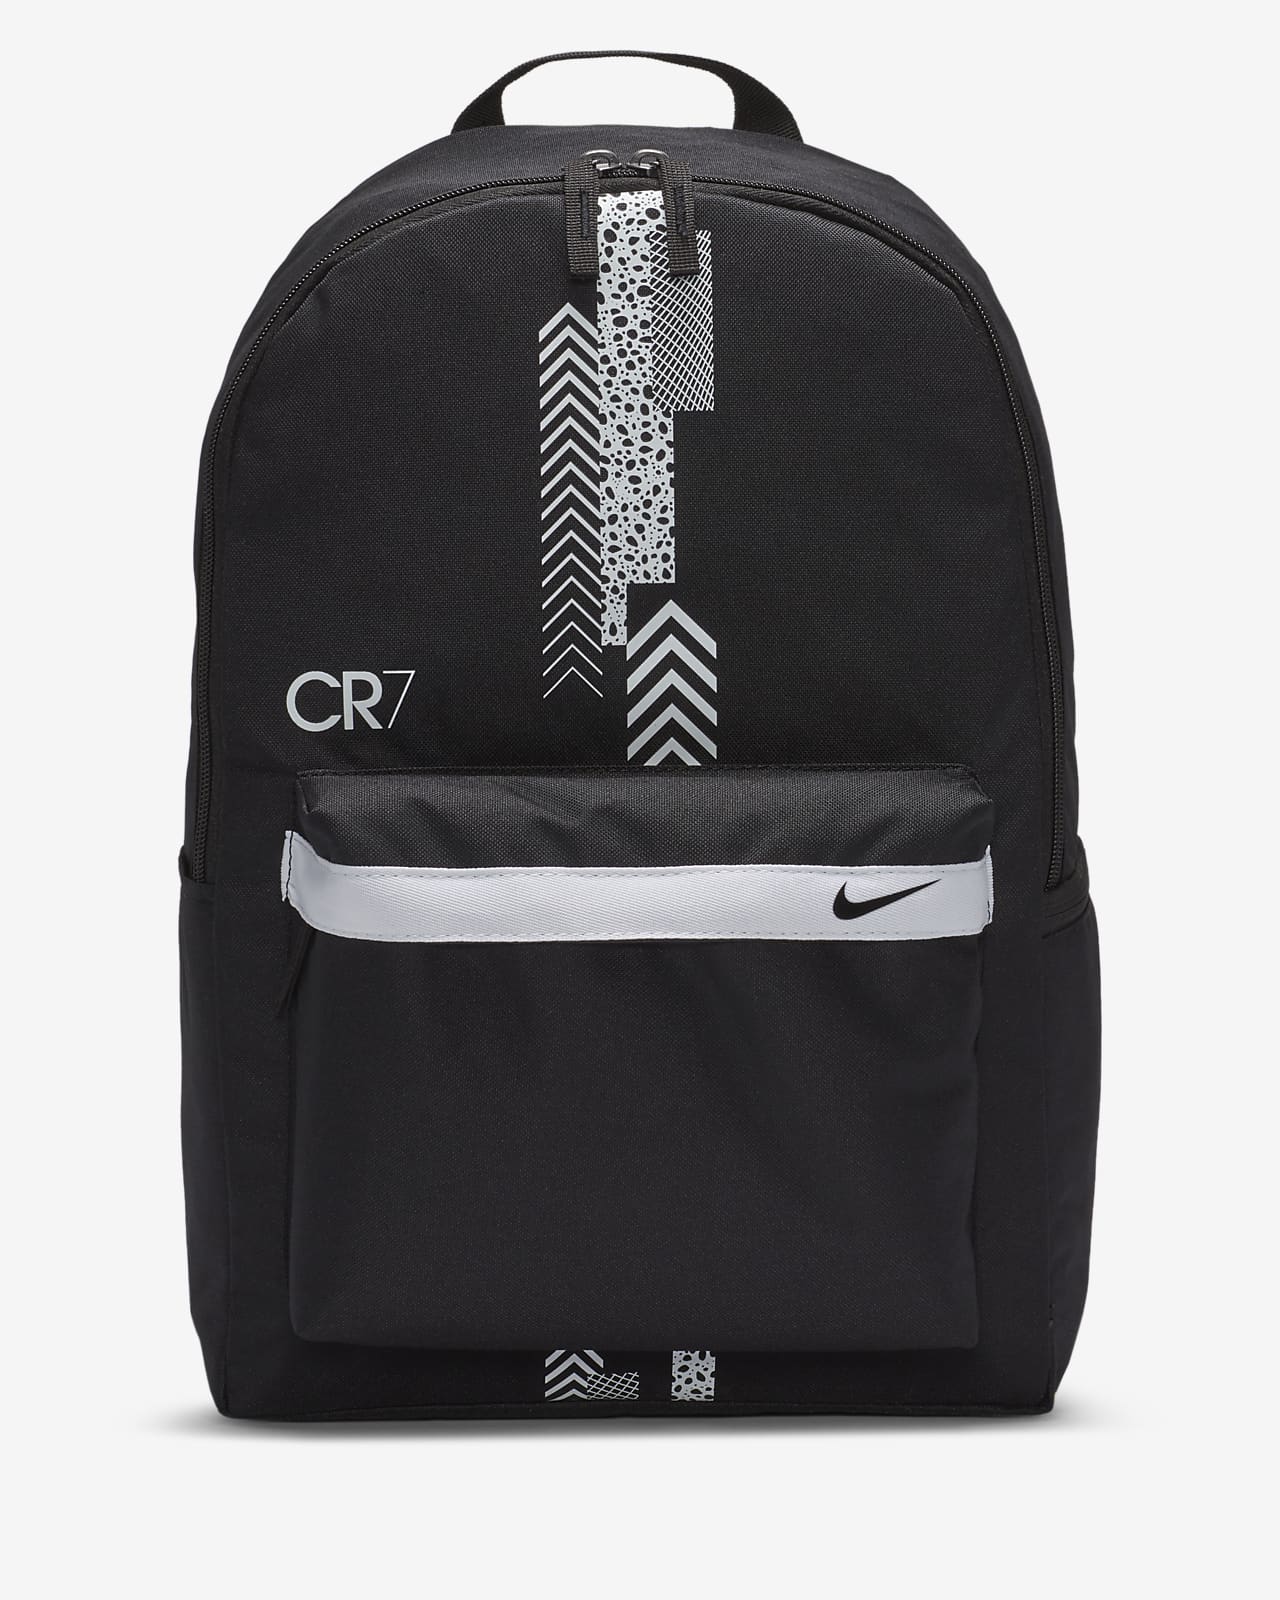 CR7 Kids' Football Backpack. Nike SG